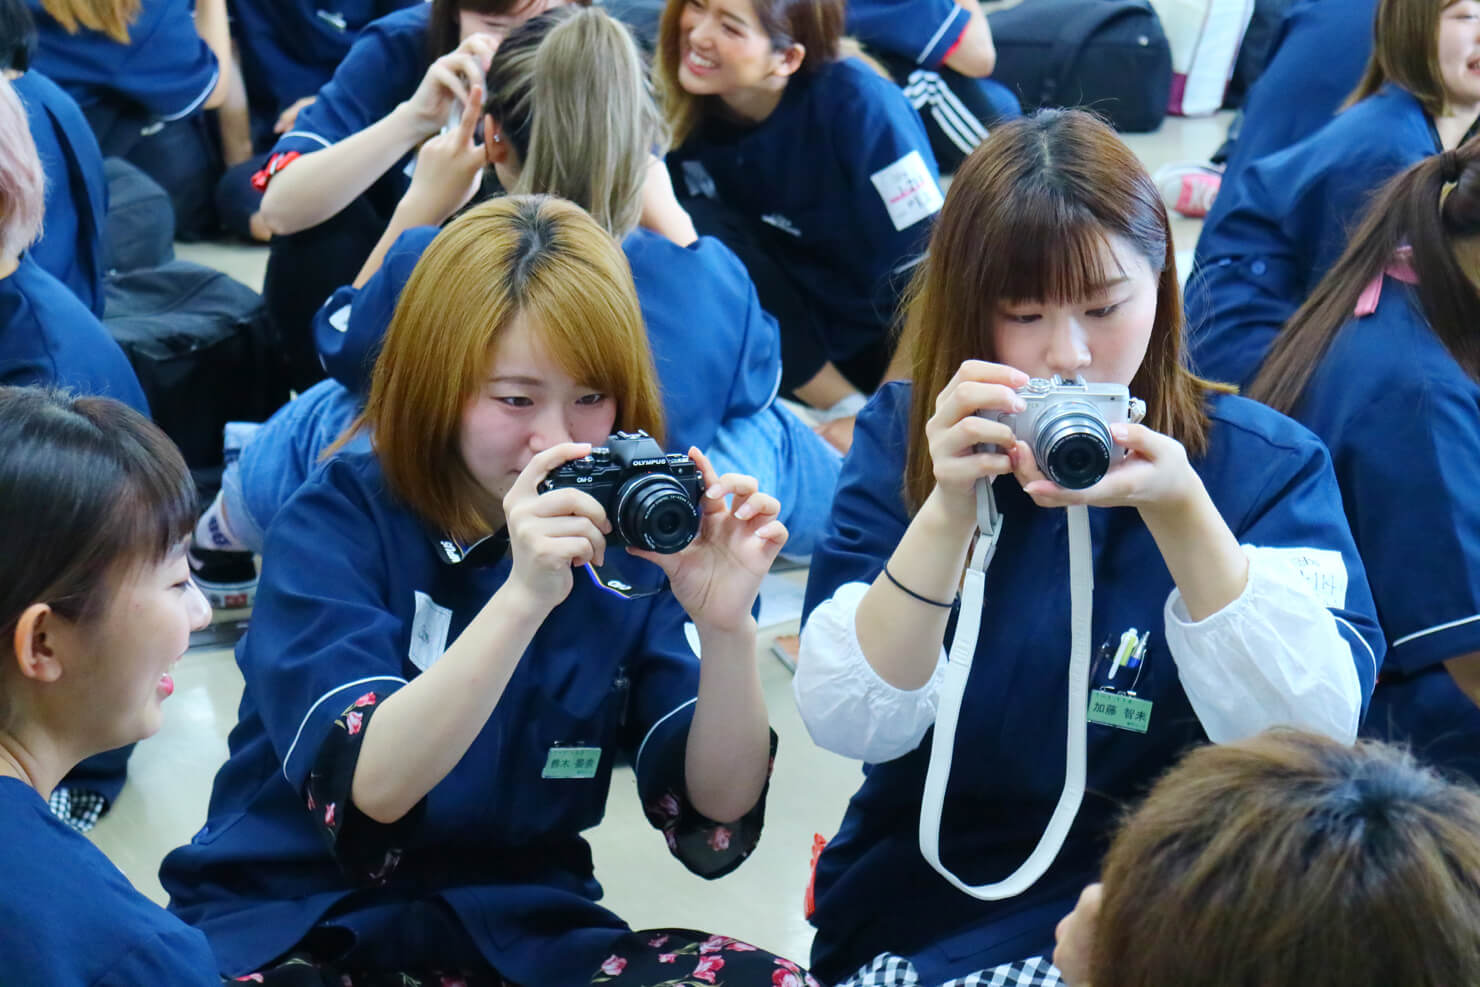 2018/6/28（木）  住田美容専門学校にて撮影講座を開催しました。